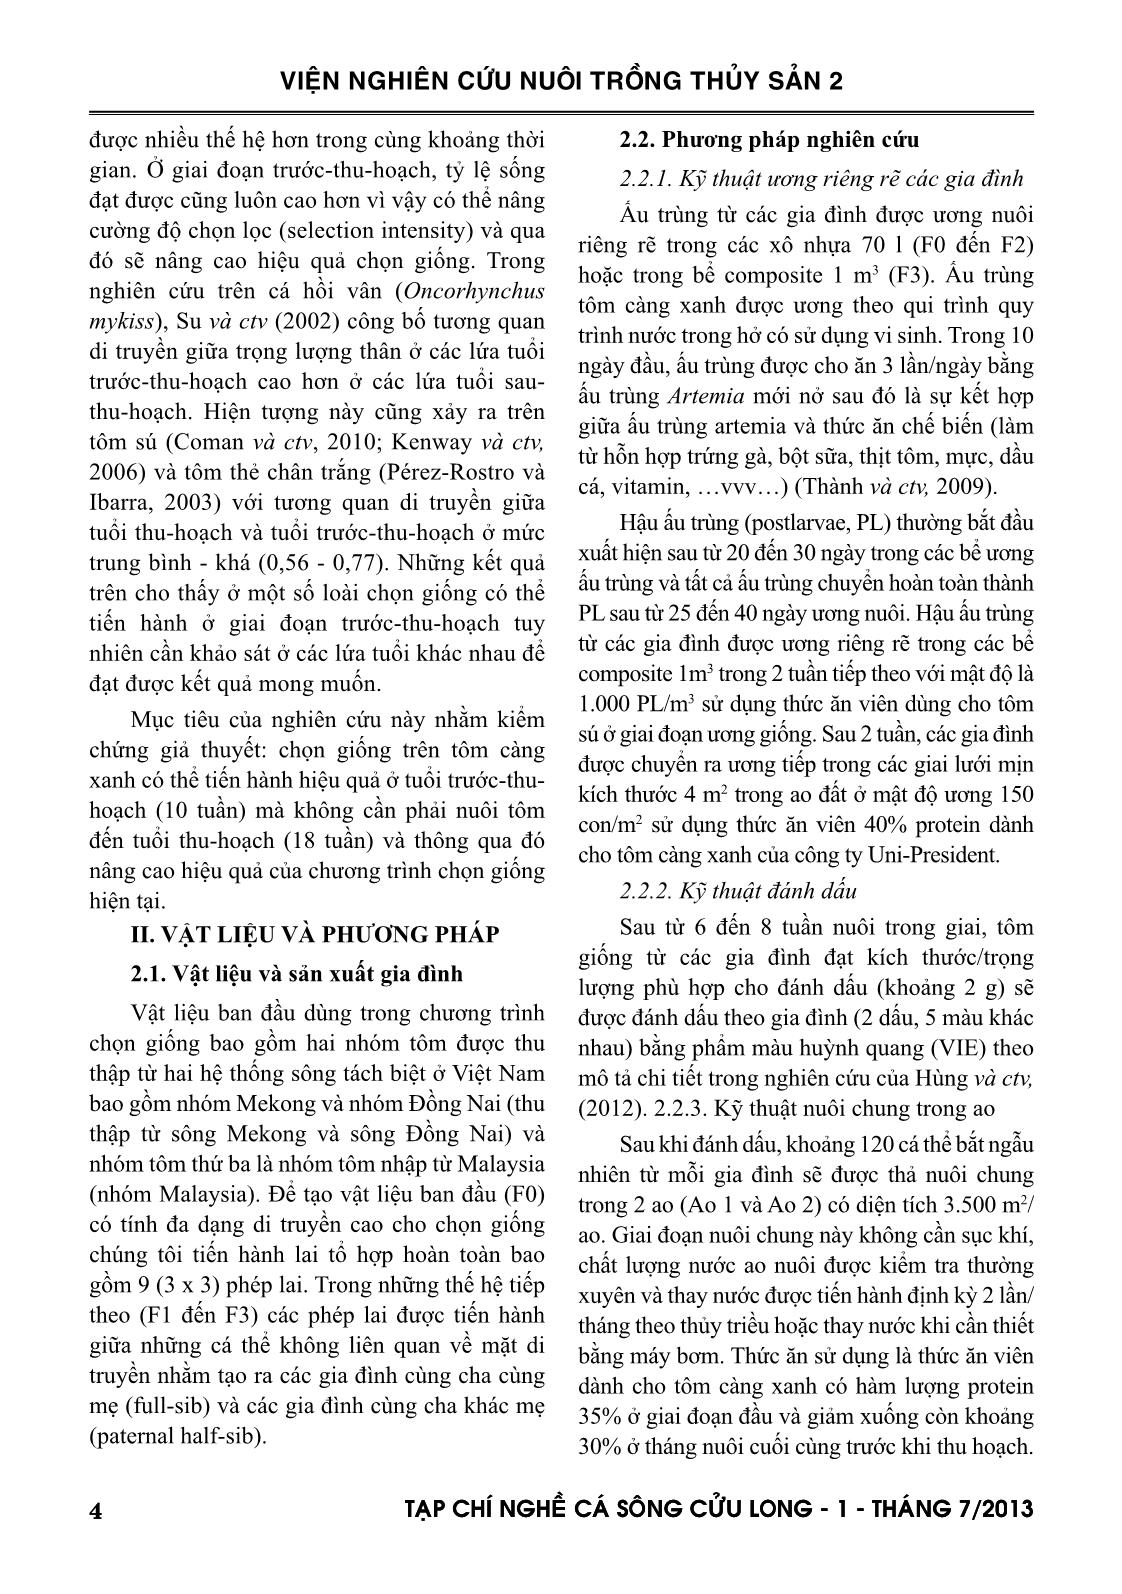 Tạp chí Nghề cá sông Cửu Long - Số 01/2013 trang 4